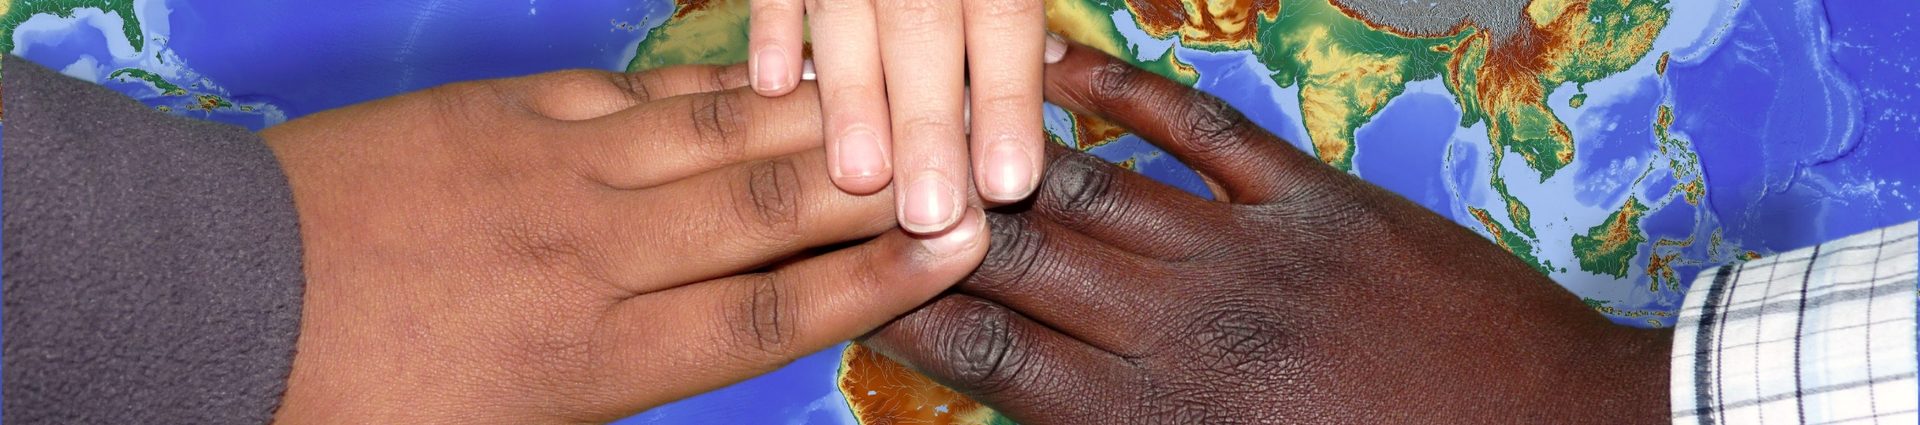 Drei Personen unterschiedlicher Hautfarbe halten gemeinsam eine Weltkugel in den Händen